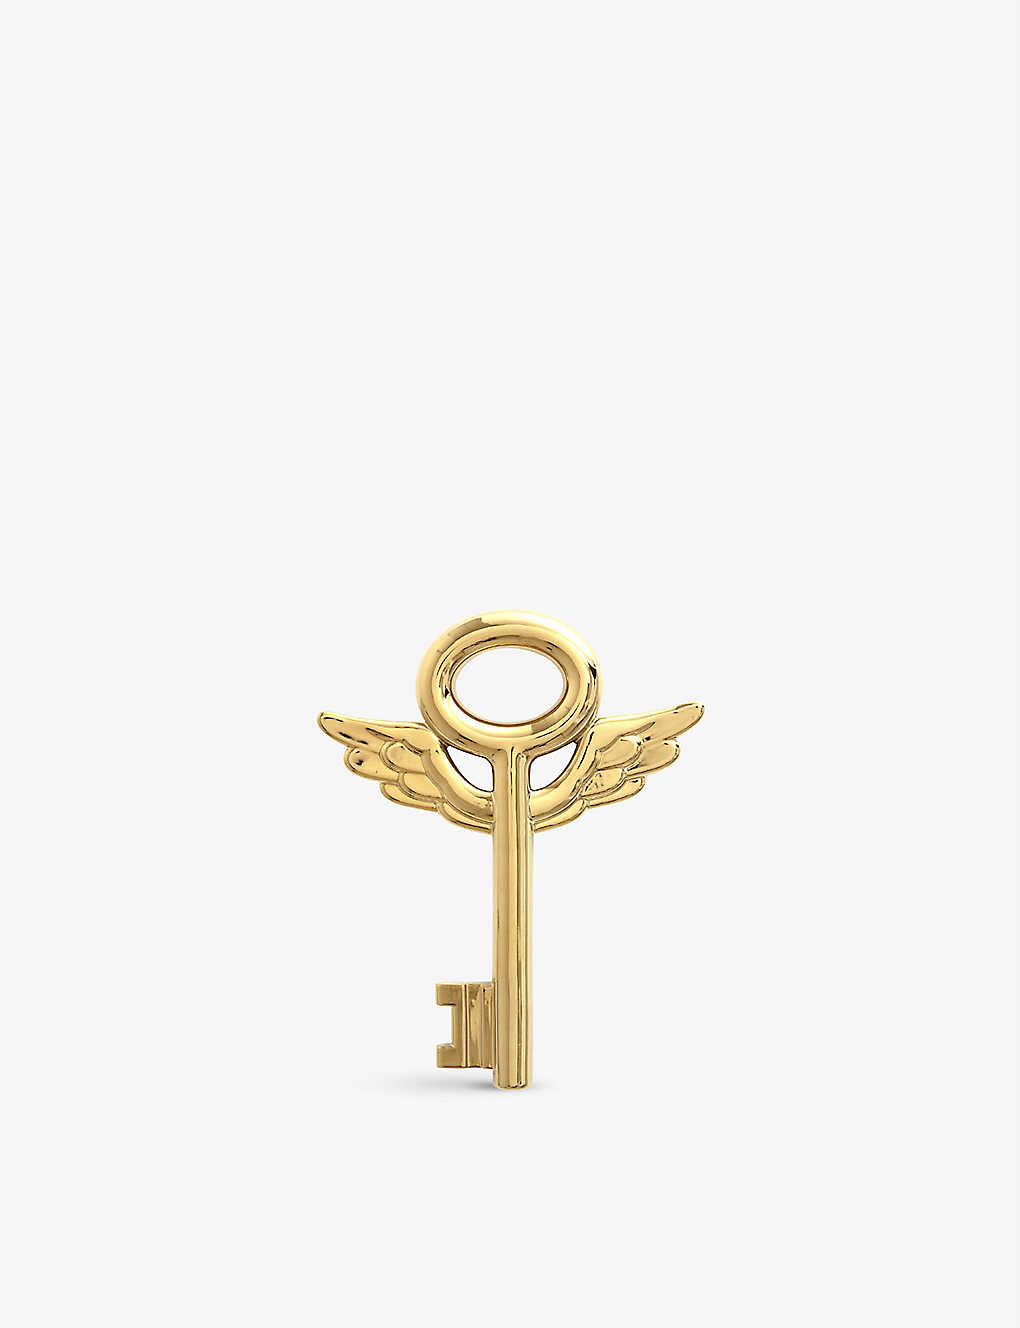 SELETTI フリーダム キー ゴールドトーン ポーセレイン デコレーション 50cm Freedom Key gold-tone porcelain decoration 50cm